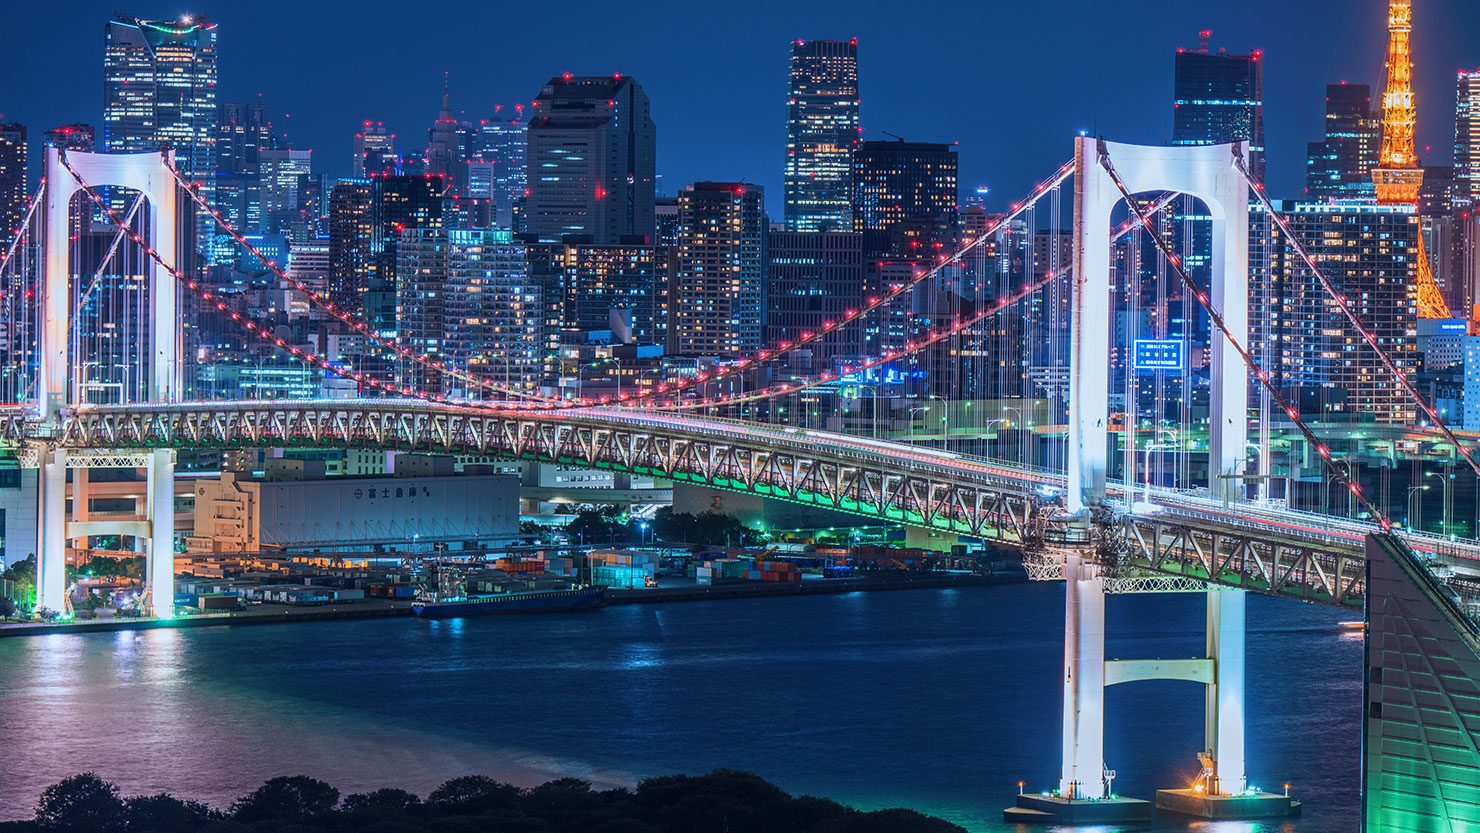 ホームズ 東京 大阪のベスト夜景10選を紹介 夜景が楽しめる優雅なライフスタイル 暮らし方から物件探し